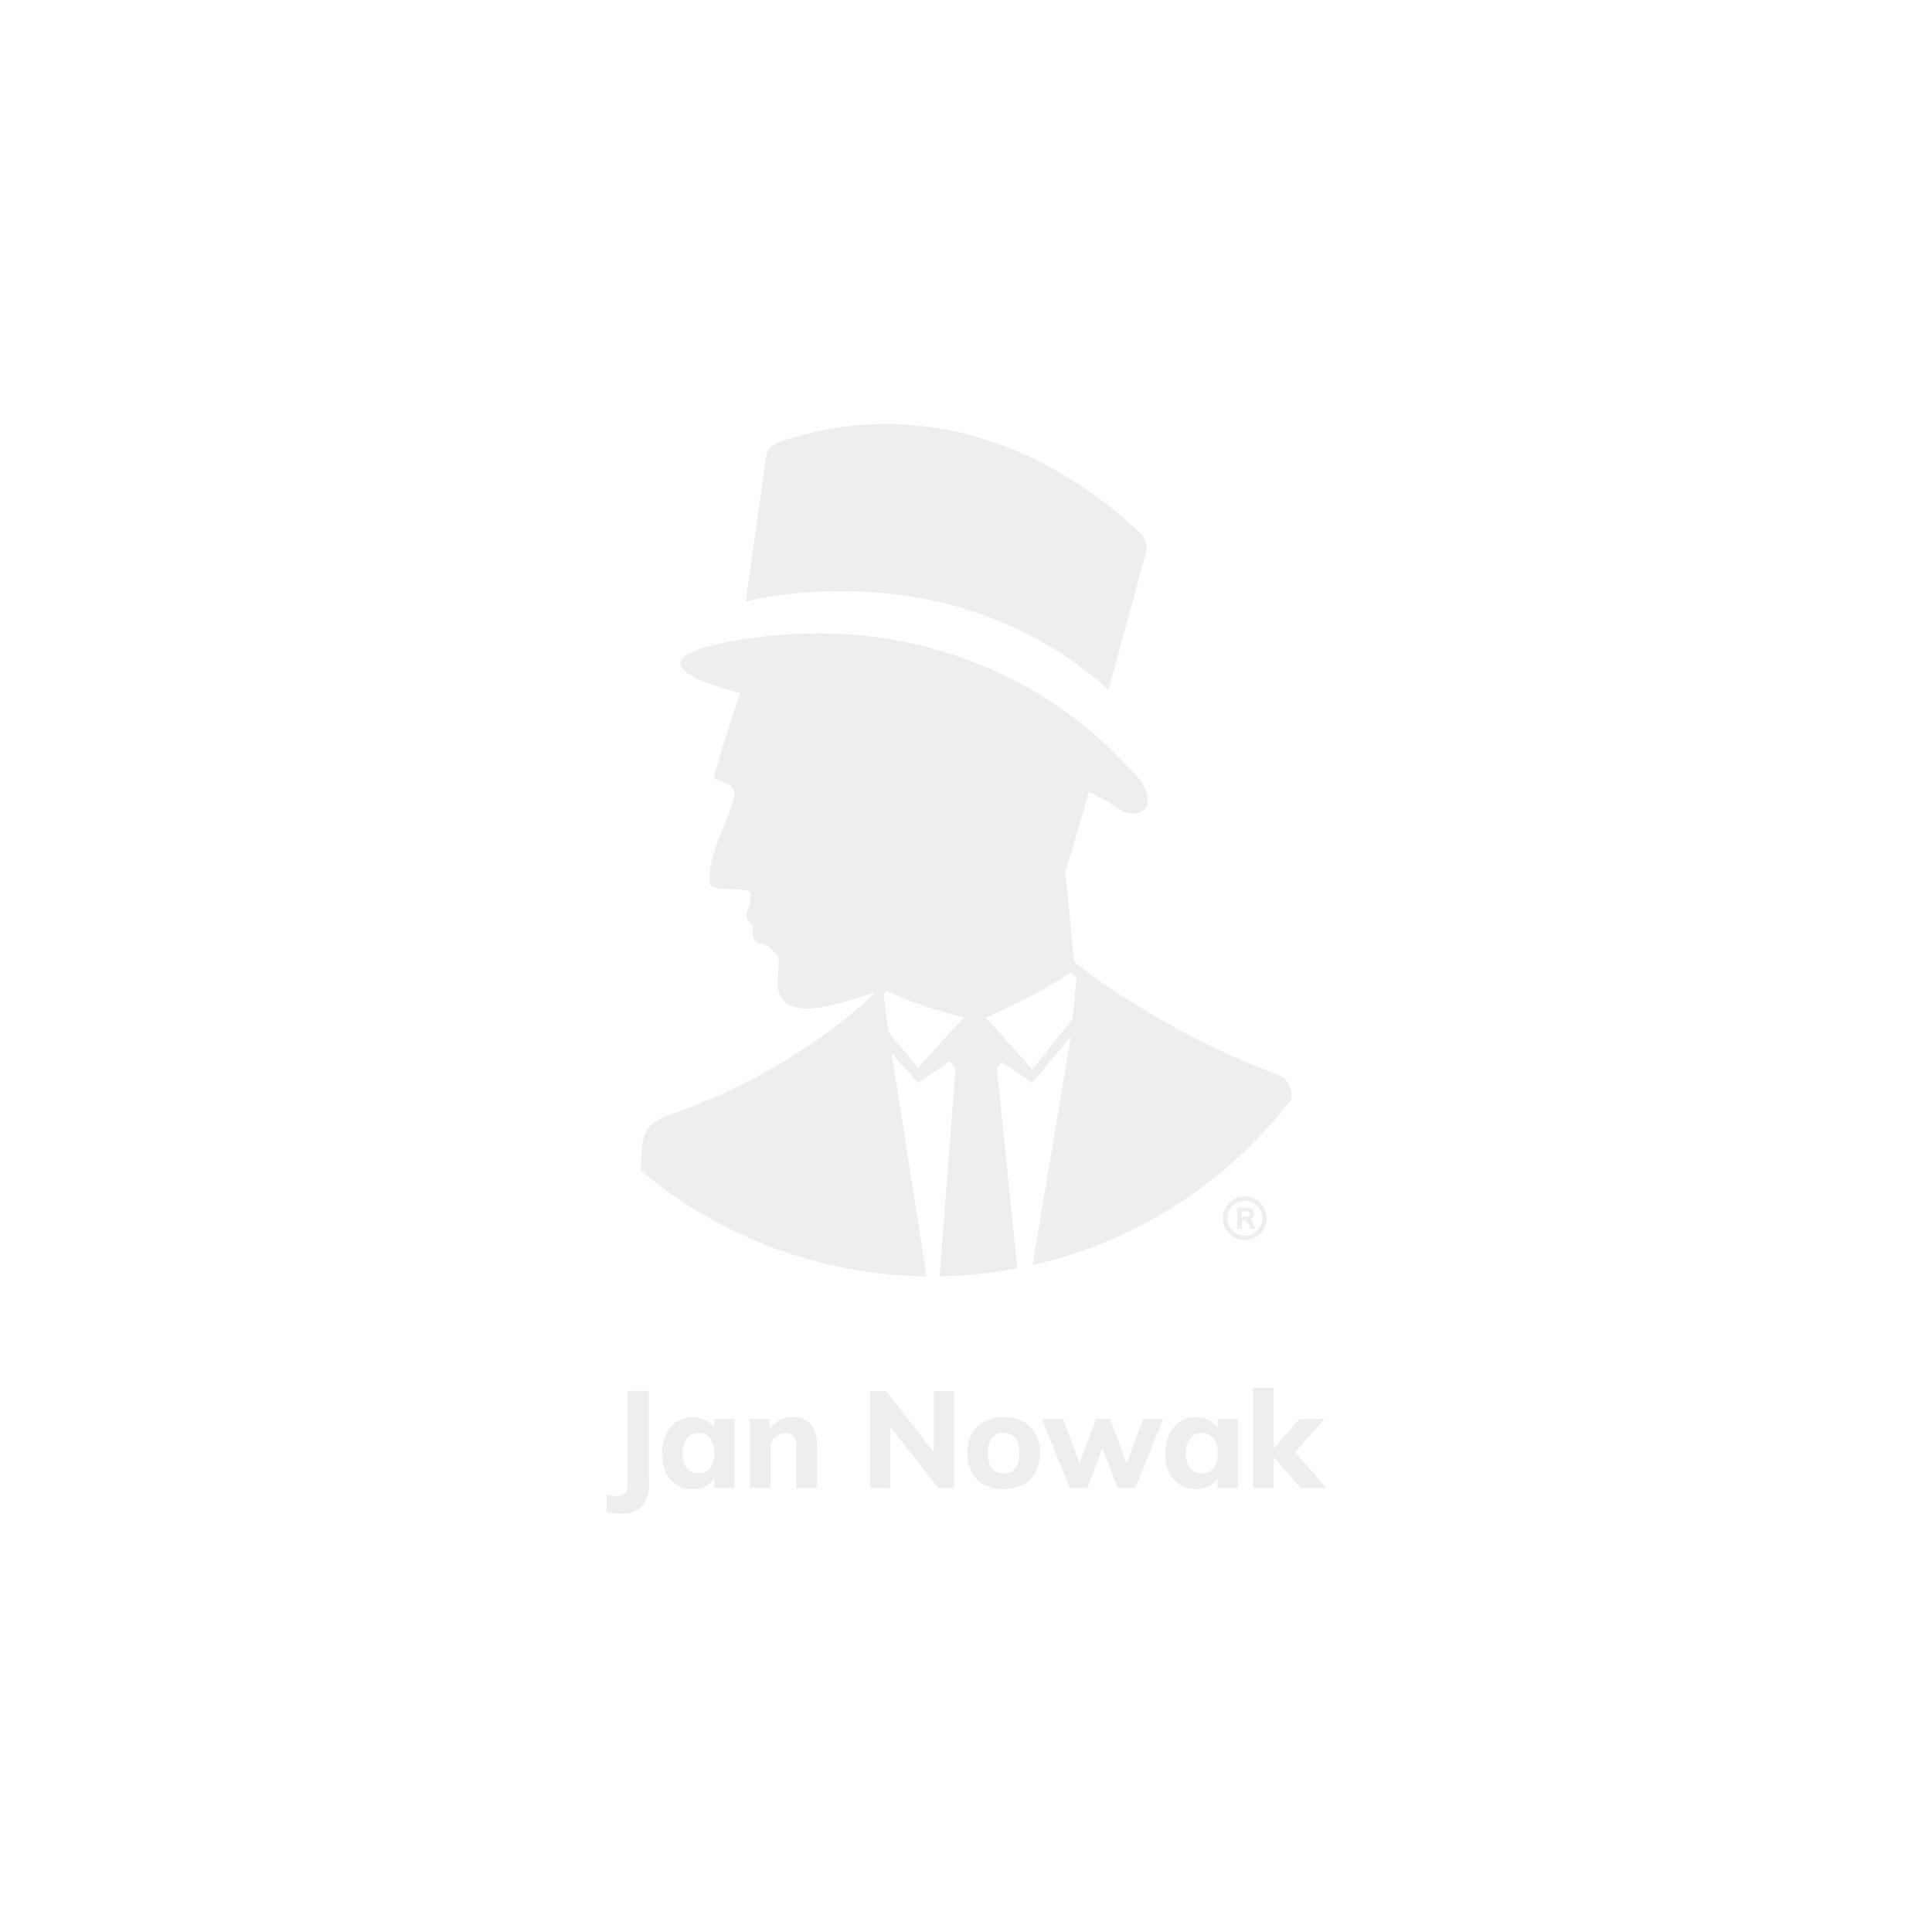 JAN NOWAK Werkbank / Werktisch mit Schubladen Modell: FRANK 60×170 Anthrazit-Blau